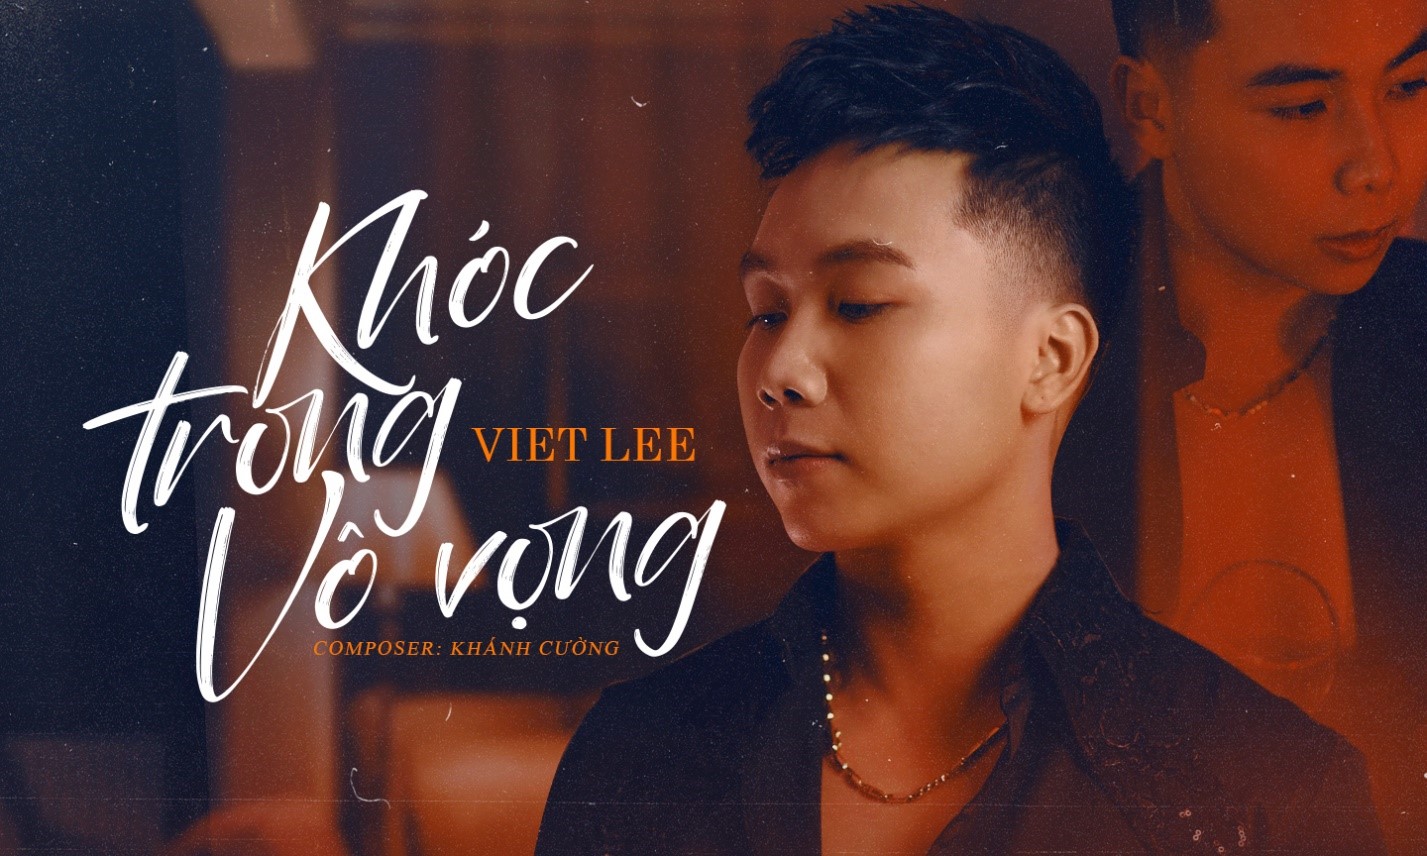 Ca sĩ Việt kiều Viet Lee ra mắt MV về tình yêu đơn phương